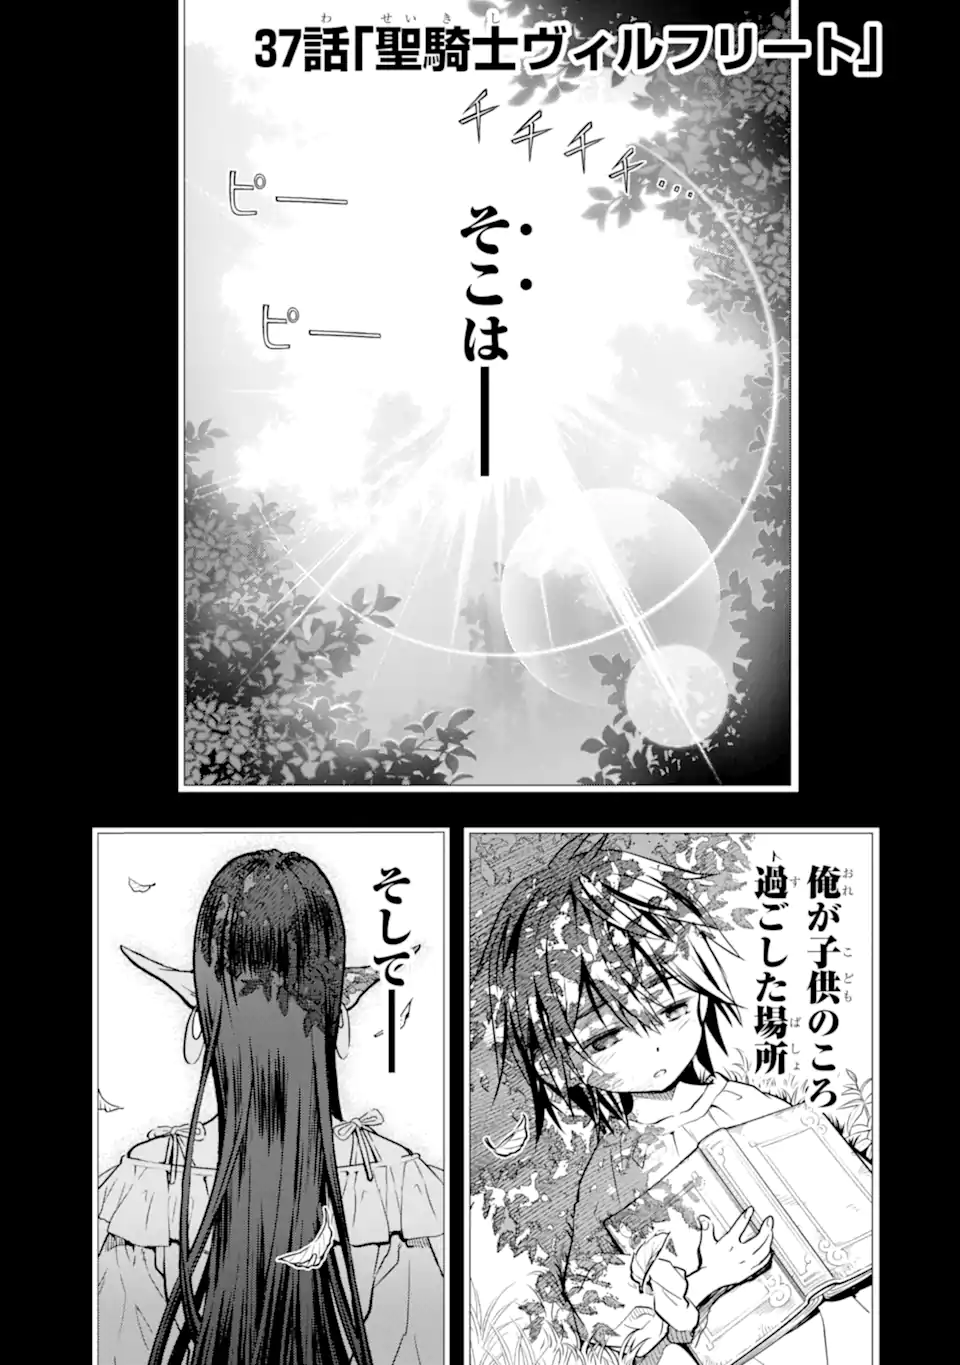 Koko wa Ore ni Makasete Saki ni Ike to Itte kara 10 Nen ga Tattara Densetsu ni Natteita - Chapter 37.1 - Page 1